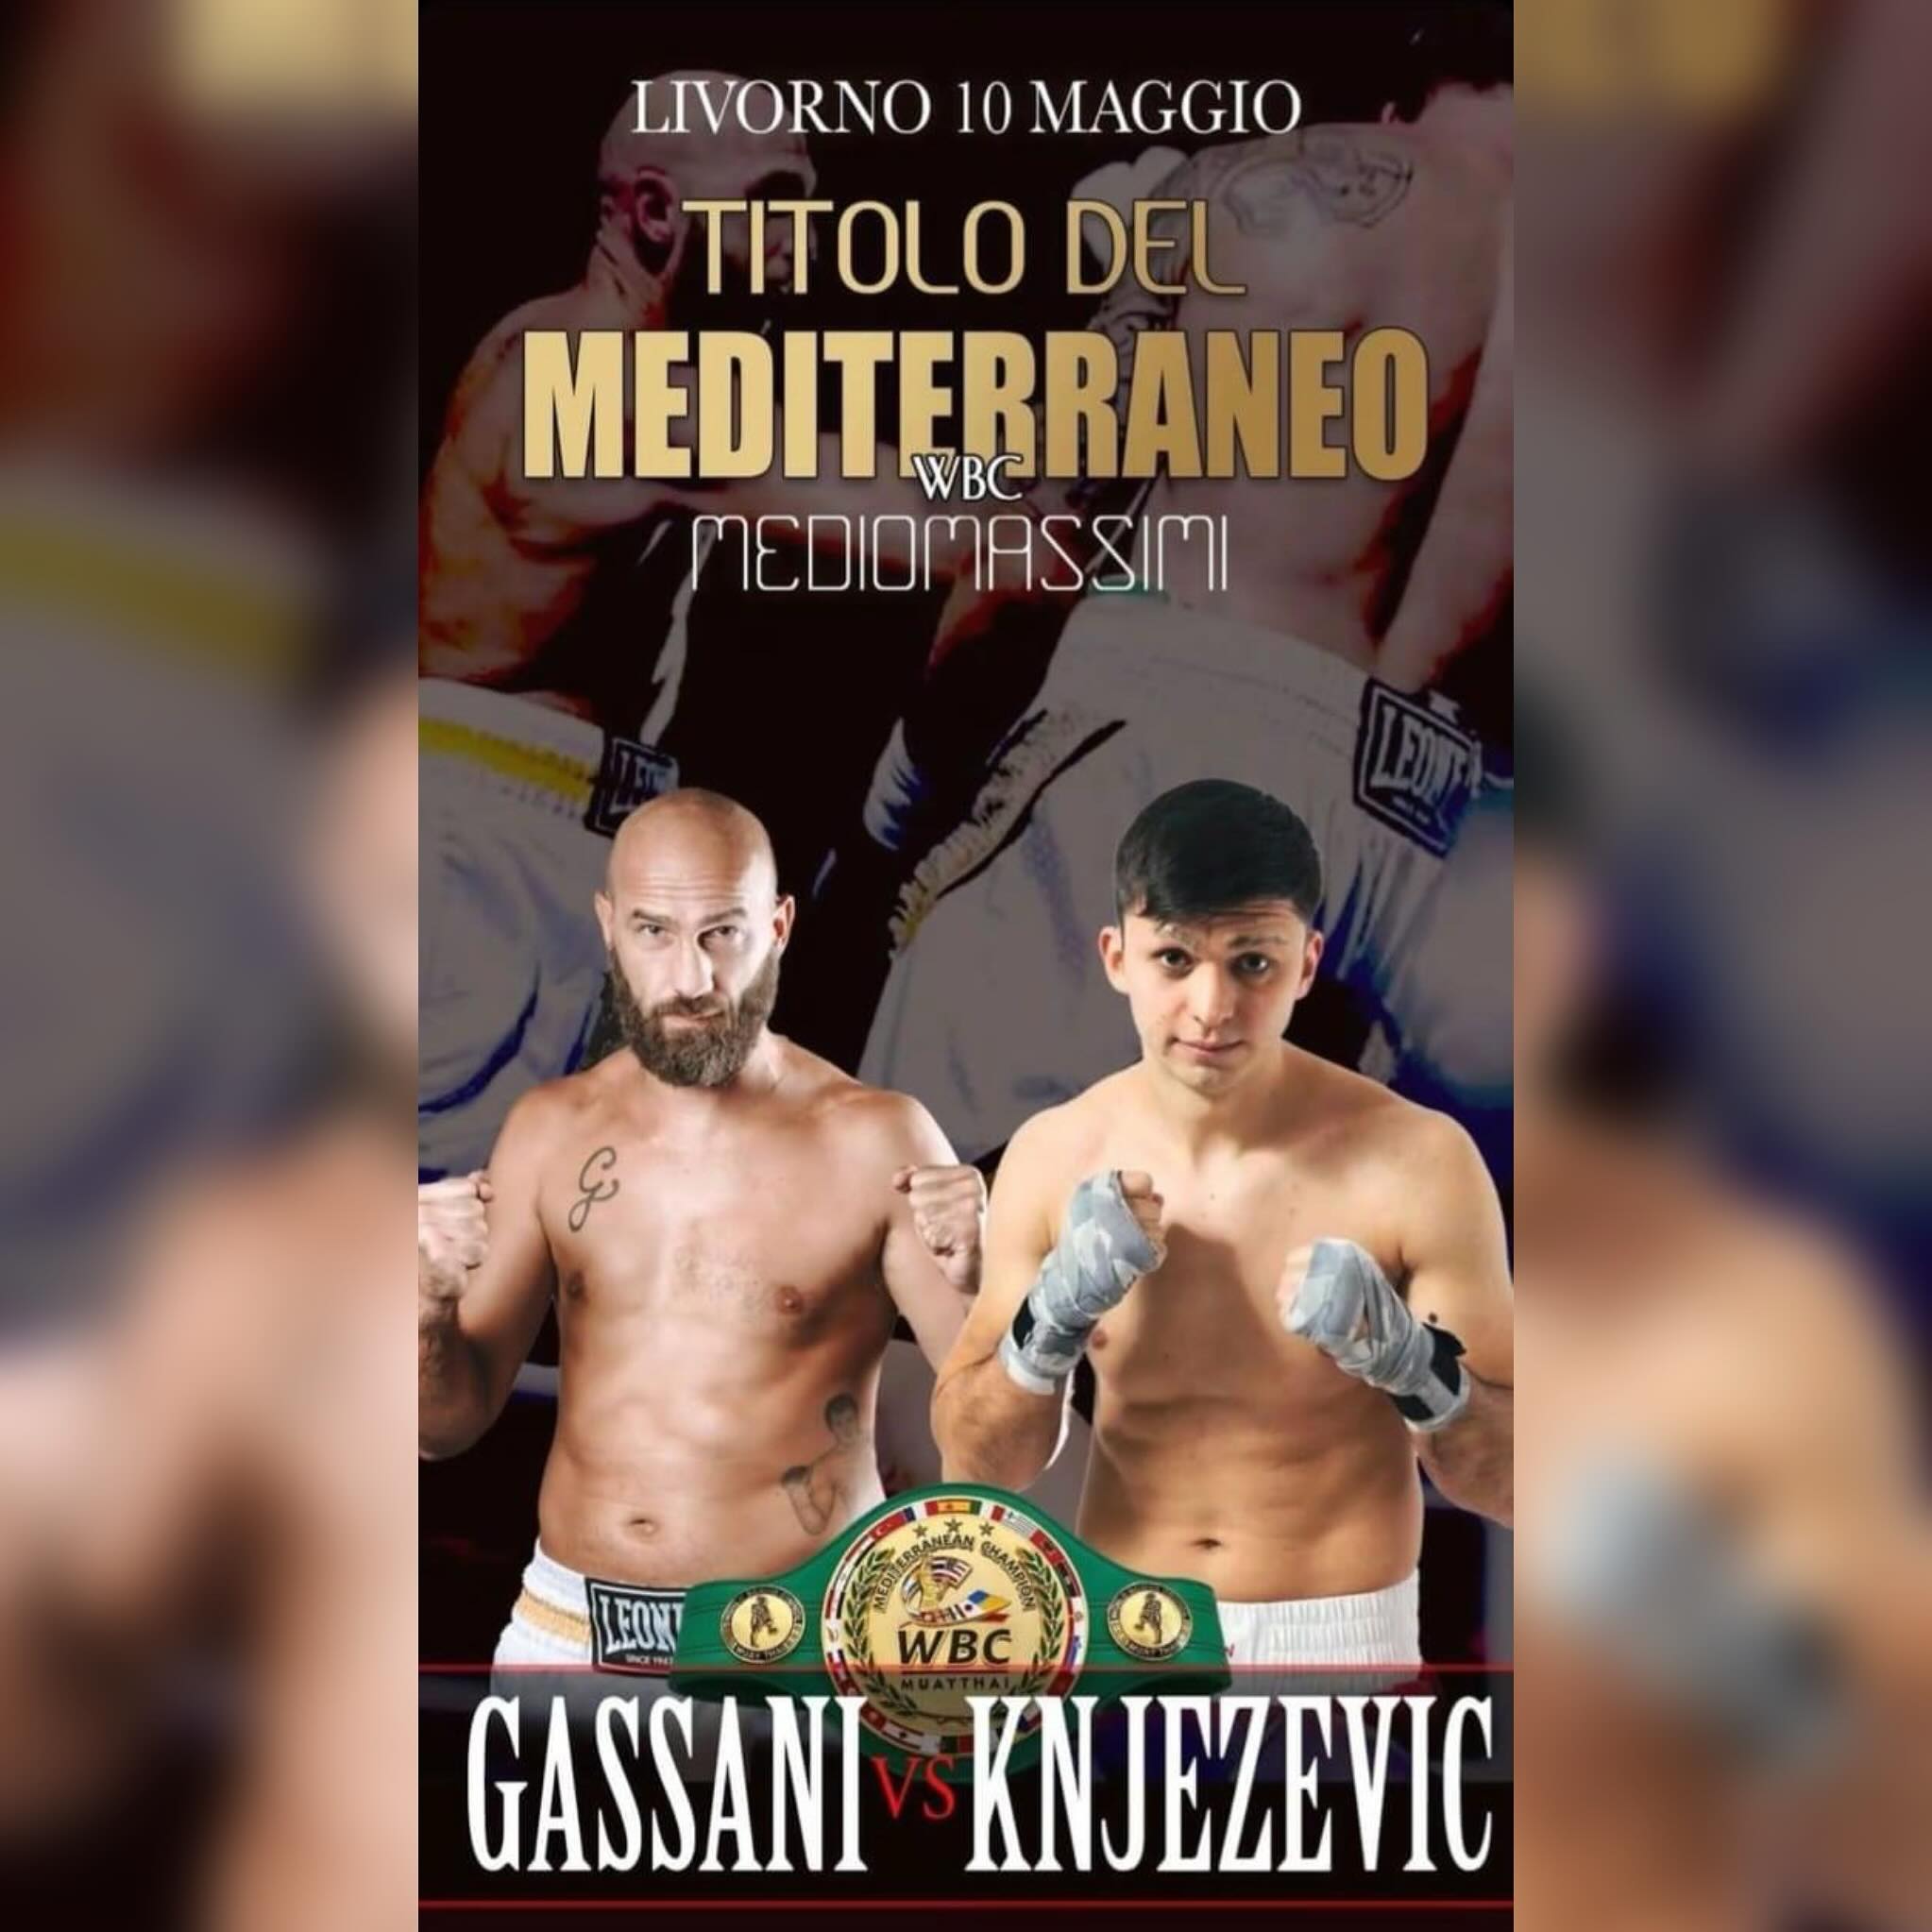  Titolo mediterraneo Mediomassimi WBC: Il 10 Maggio a Livorno Gassani vs Knjezevic 